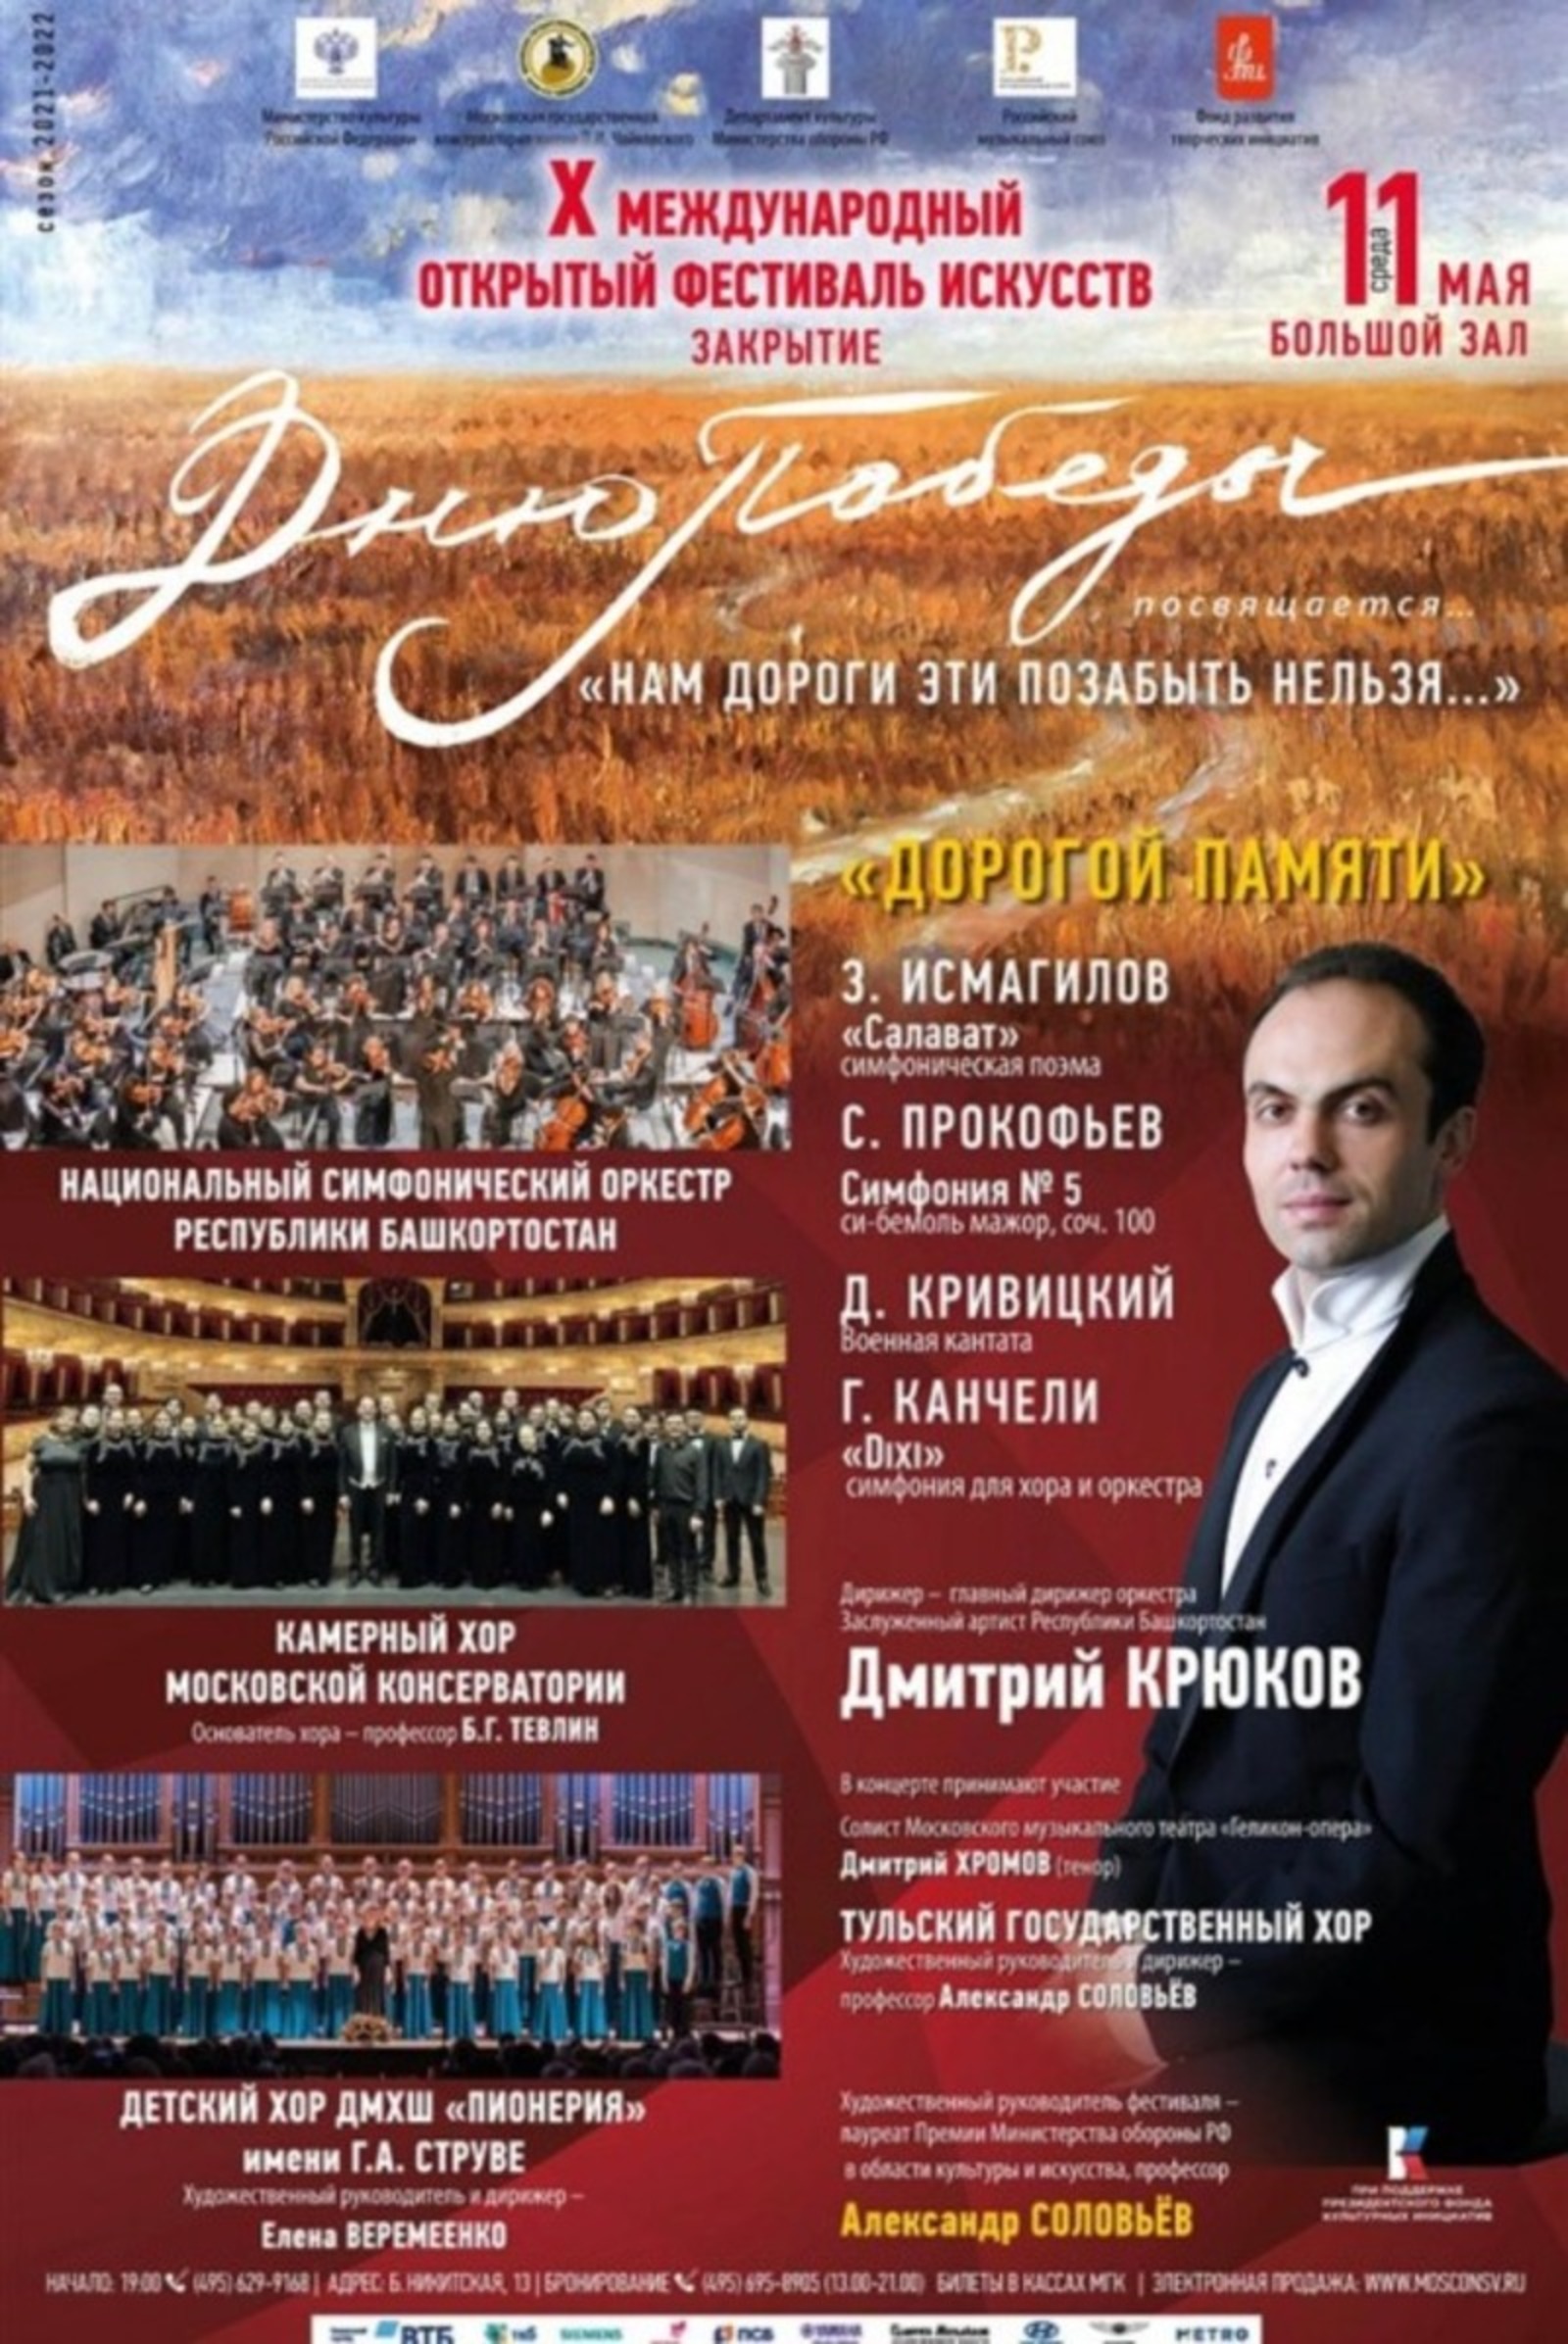 Национальный симфонический оркестр Башкортостана представит в Москве мировую премьеру